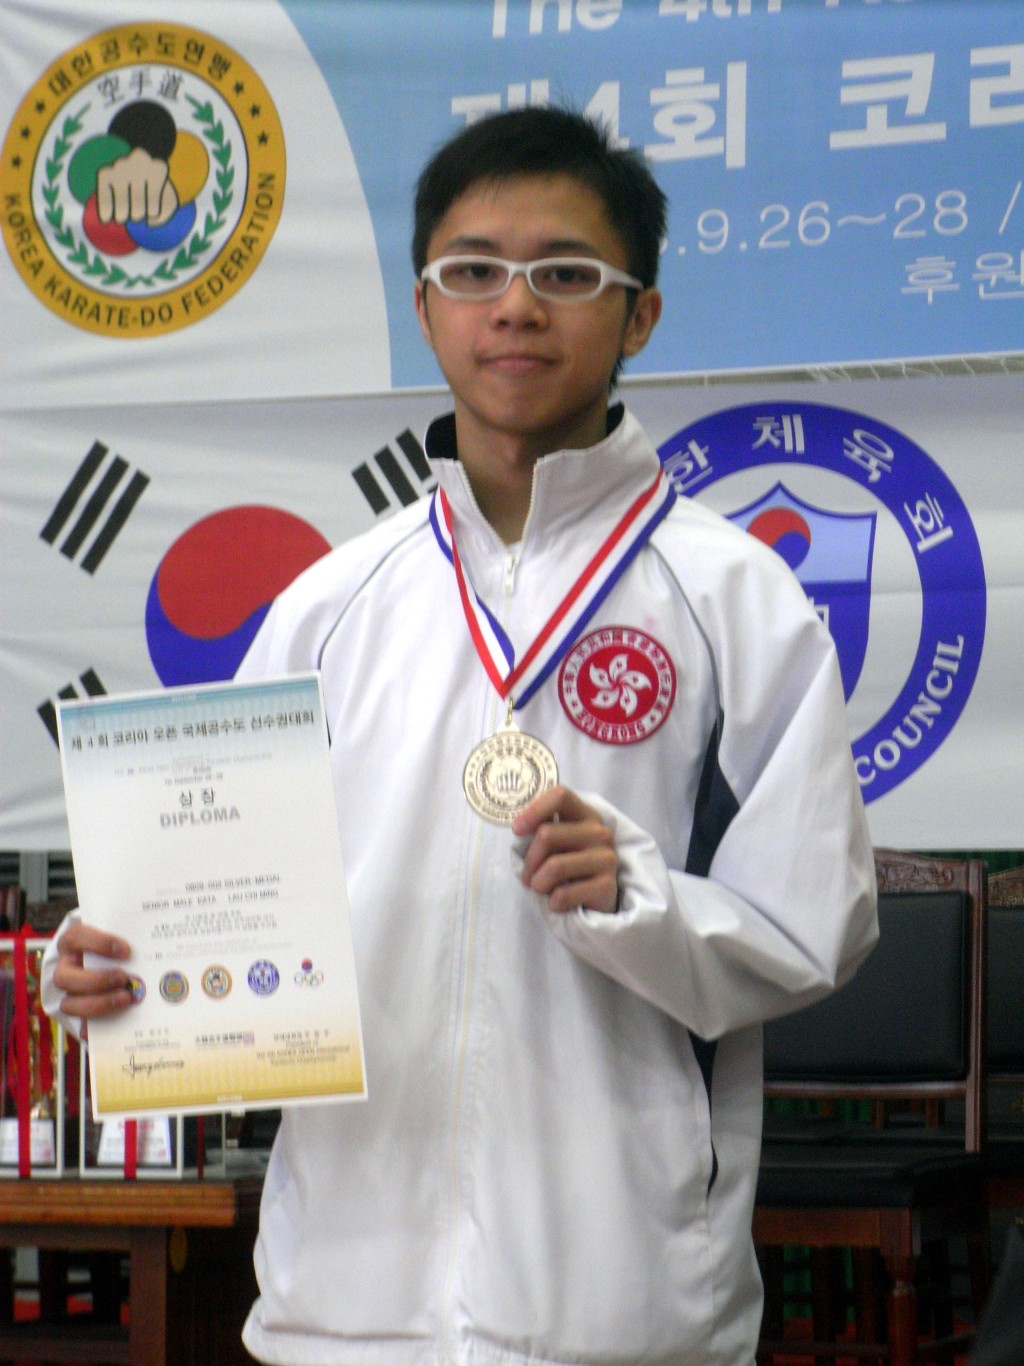 O八年第四韓國空手道國際邀請賽, 劉知名除成功衛冕青少年男子個人套拳組別金牌, 也摘下成年男子個人套拳組別的銀牌。